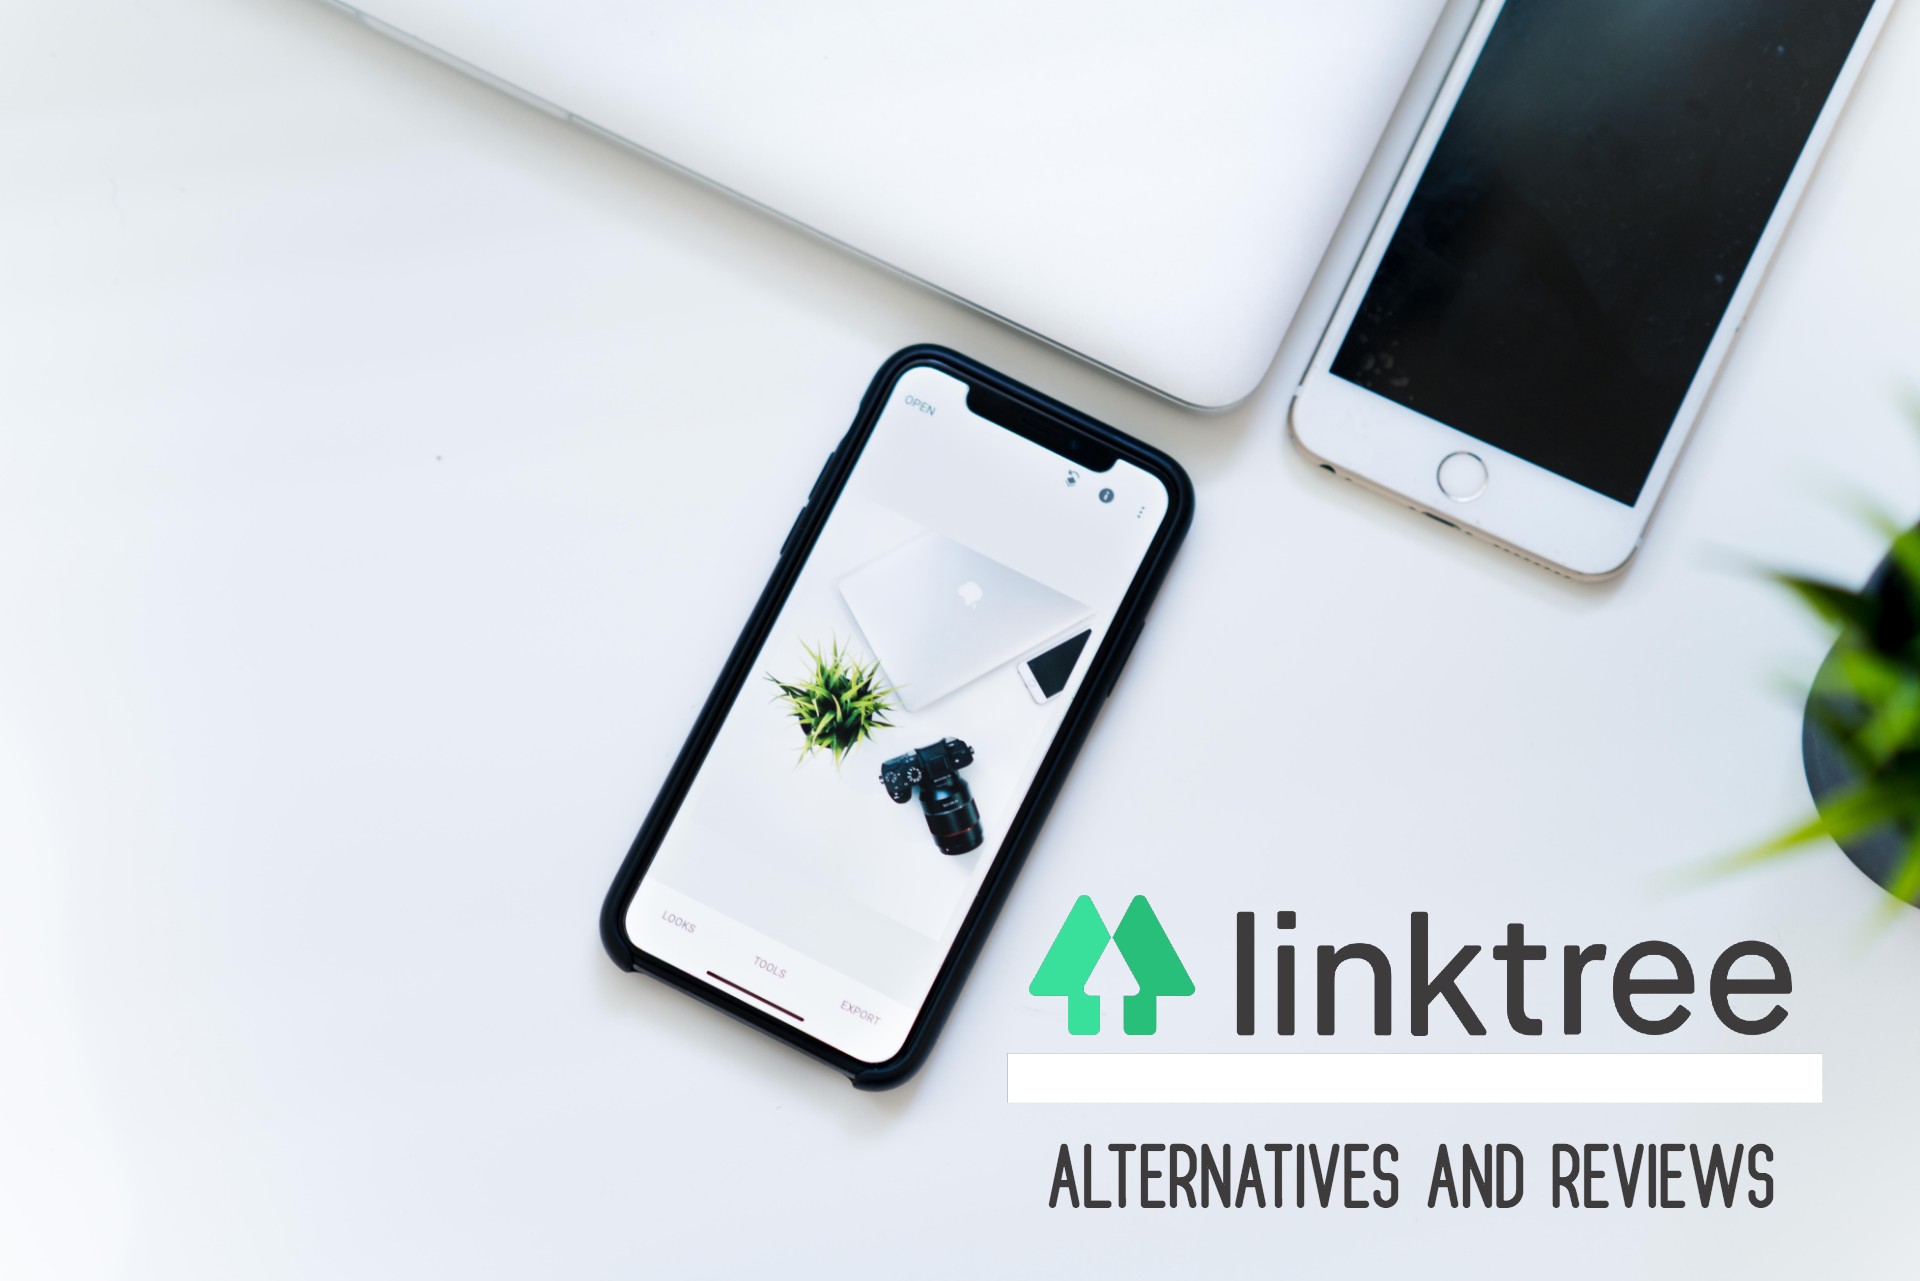 LinkTree alternatives